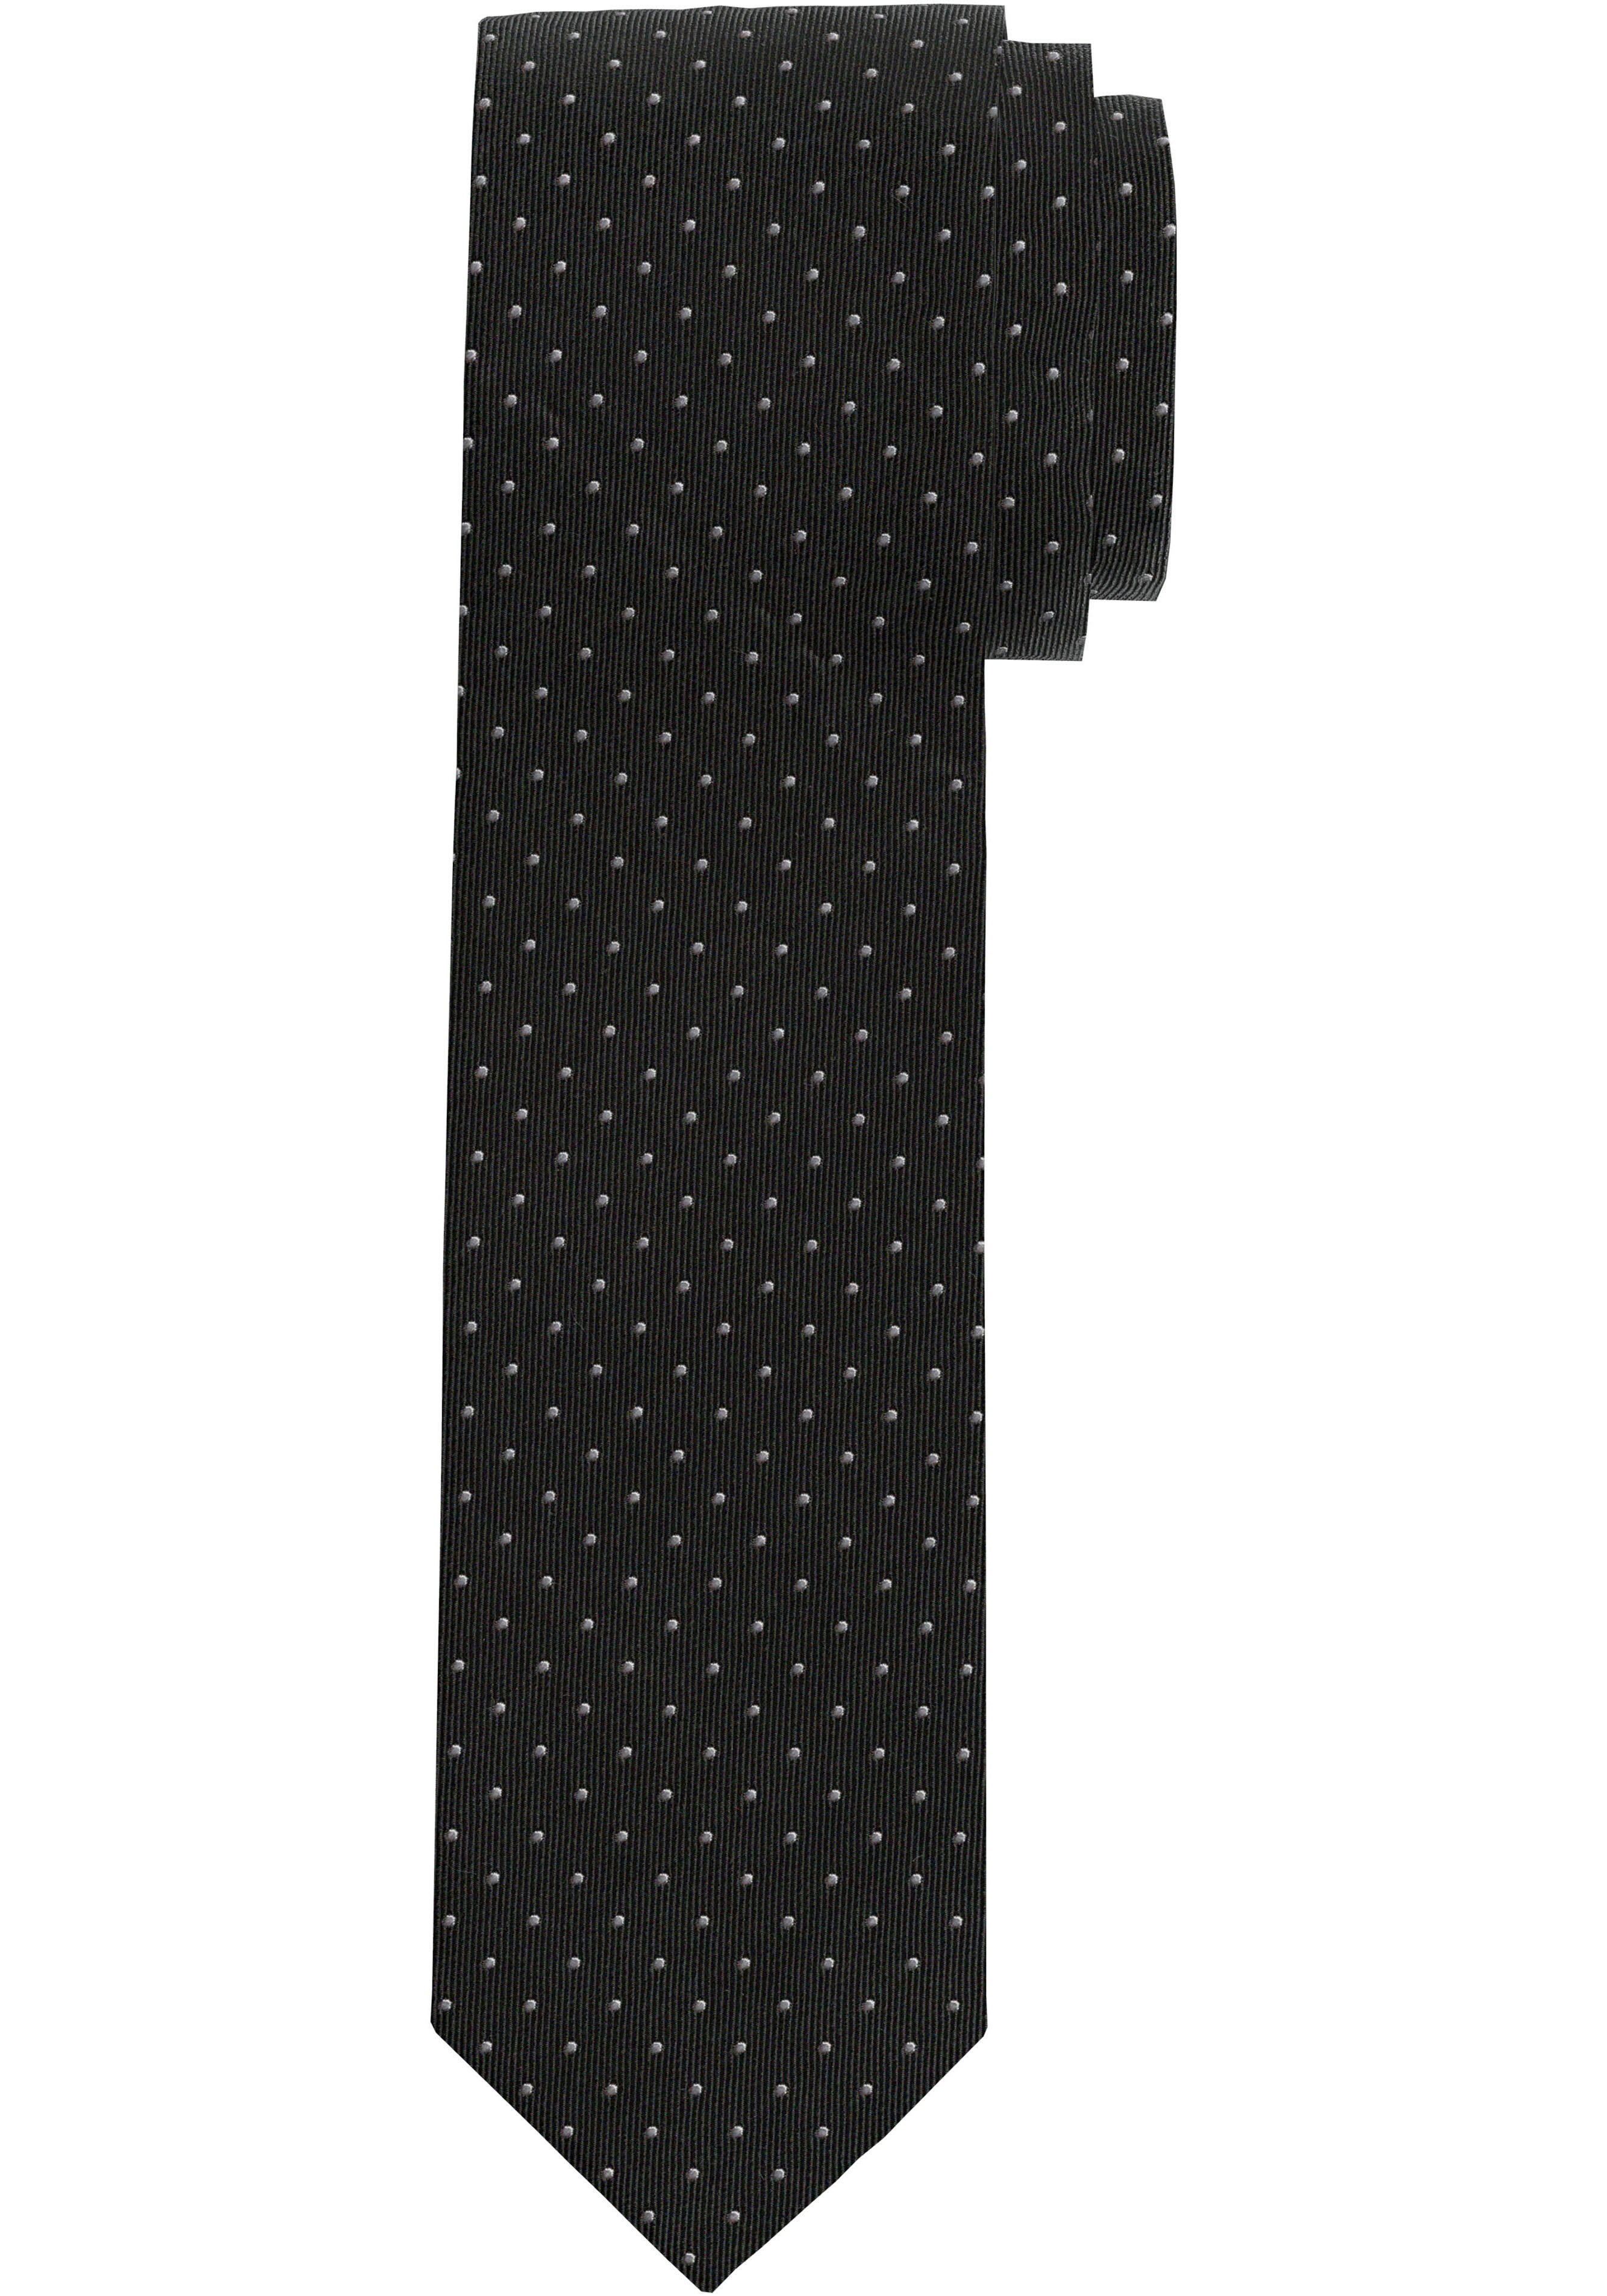 OLYMP schwarz Seidenkrawatte Krawatte